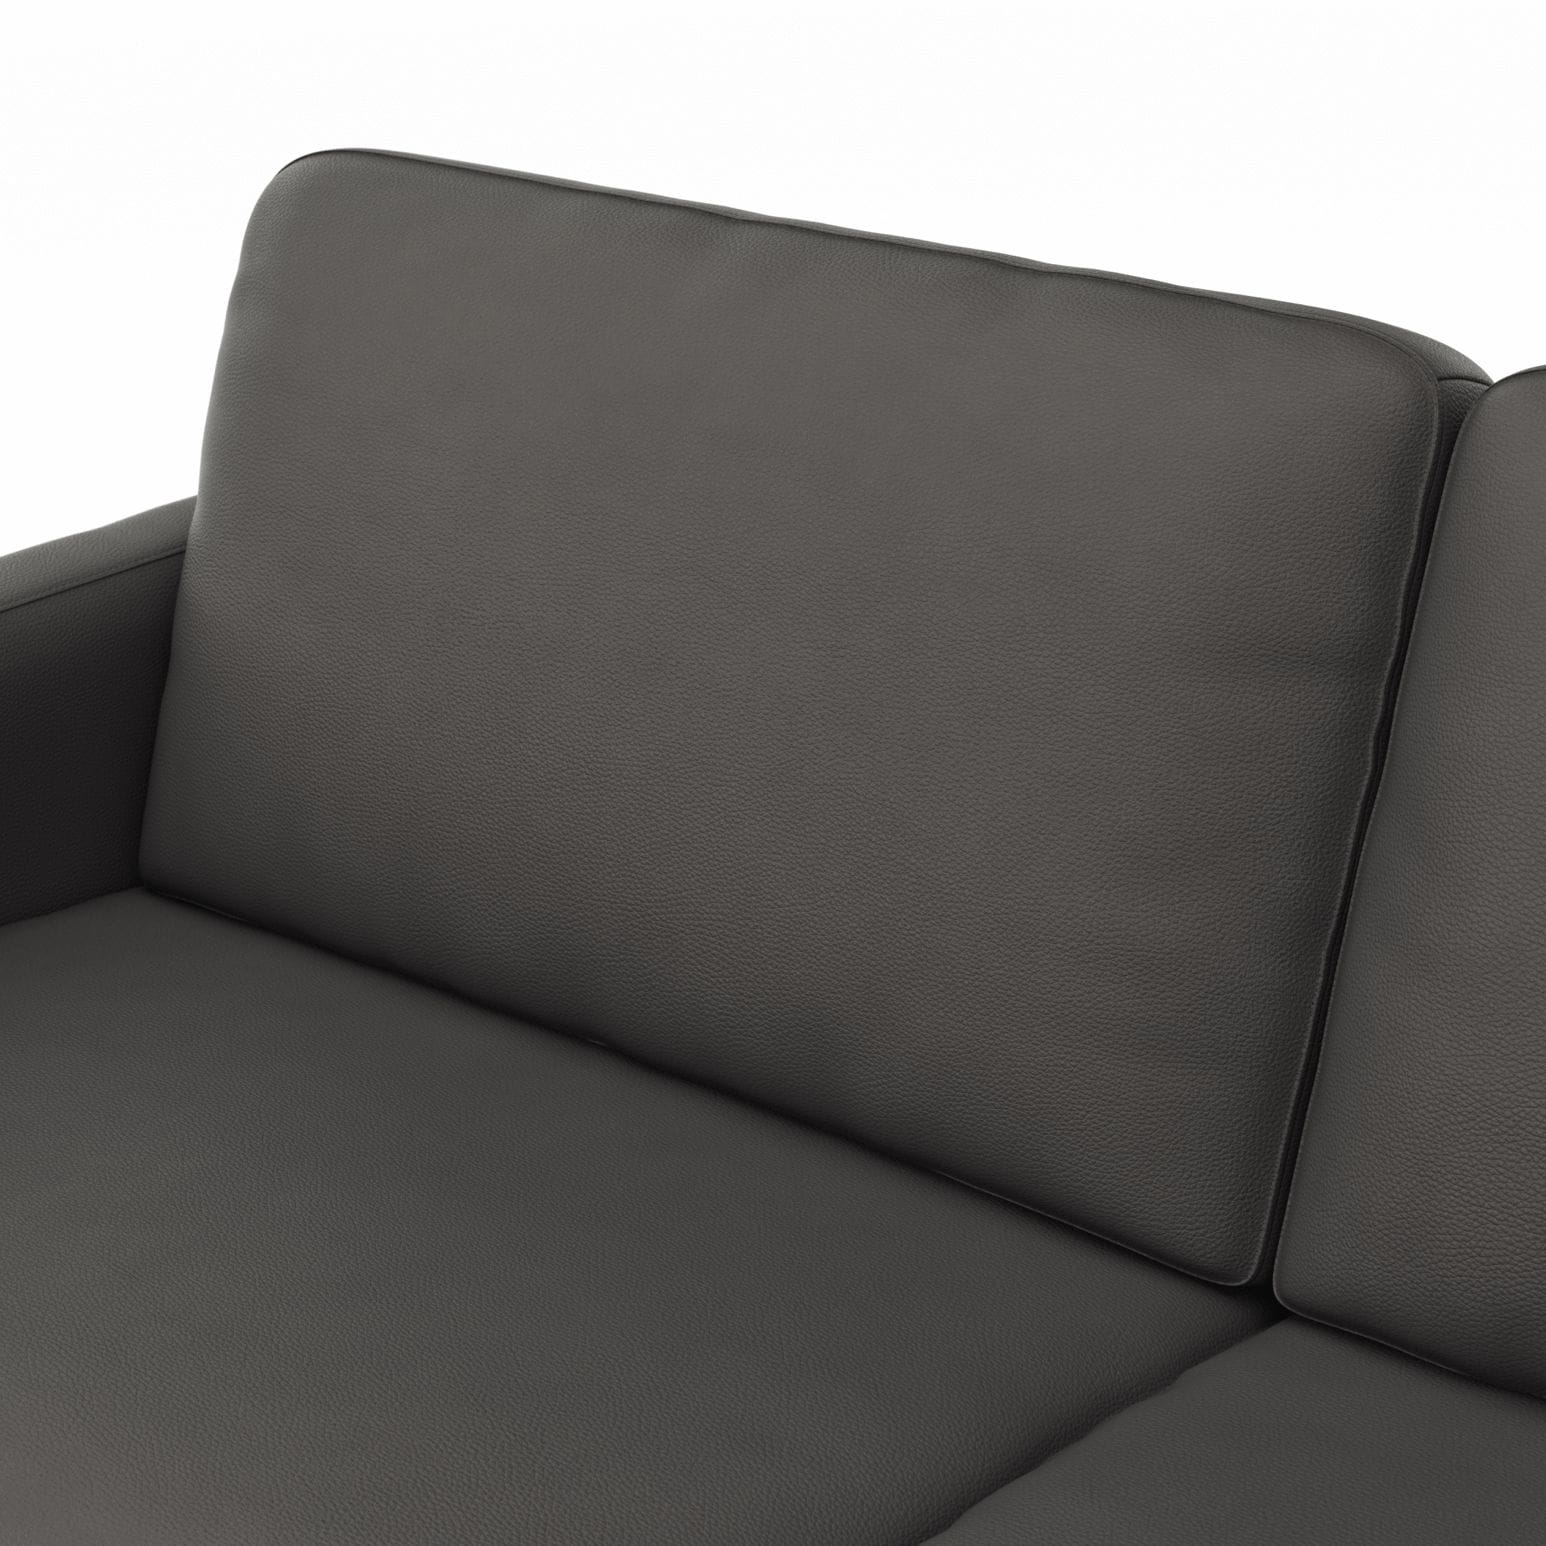 Sofa Enna - 3,5-Sitzer, Leder, Anthrazit von Contur